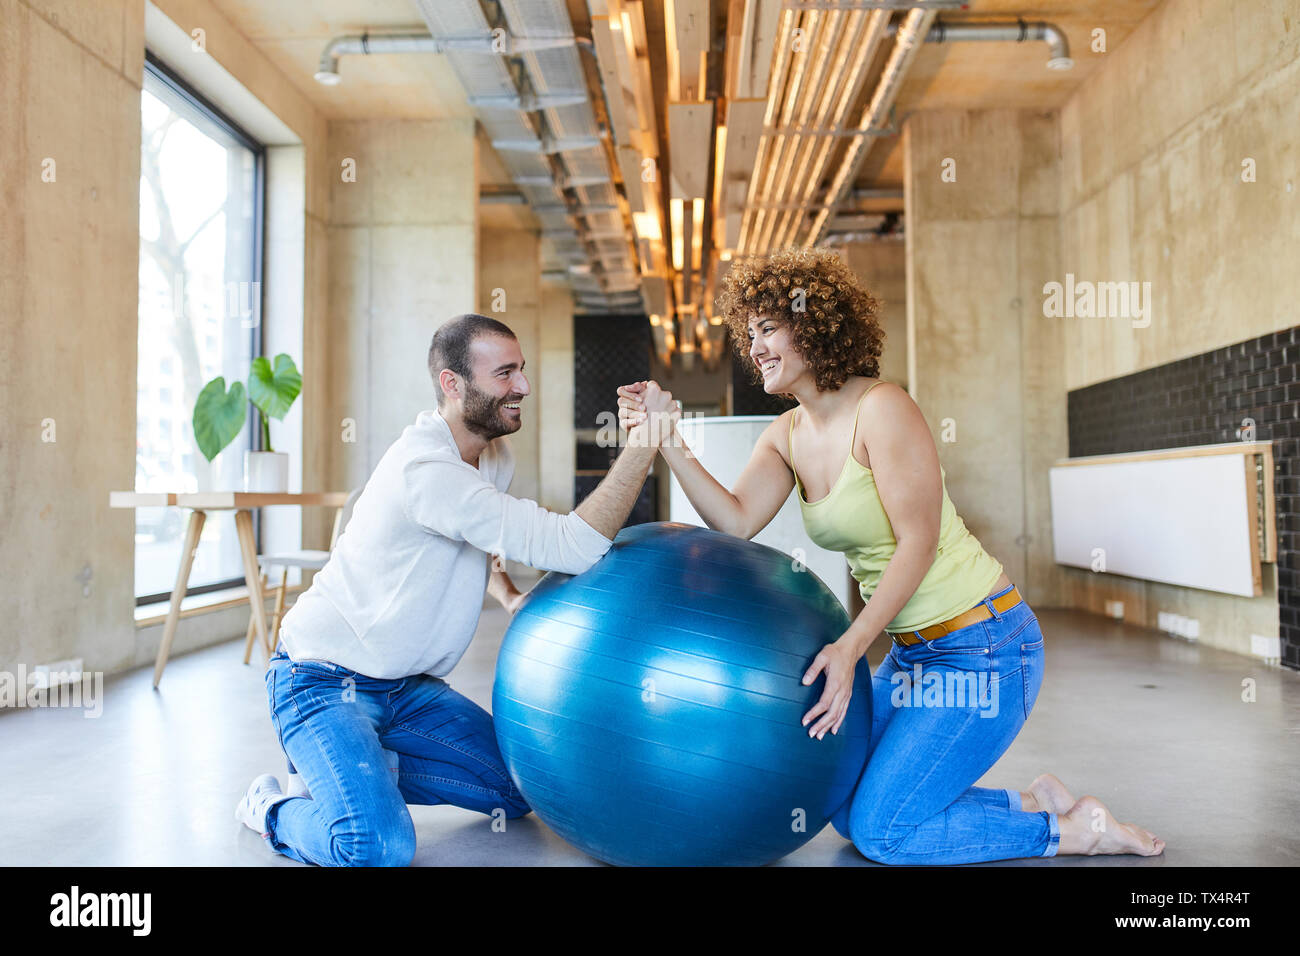 Glücklich, Mann und Frau, arm wrestling auf Fitness Ball in modernen Büro Stockfoto